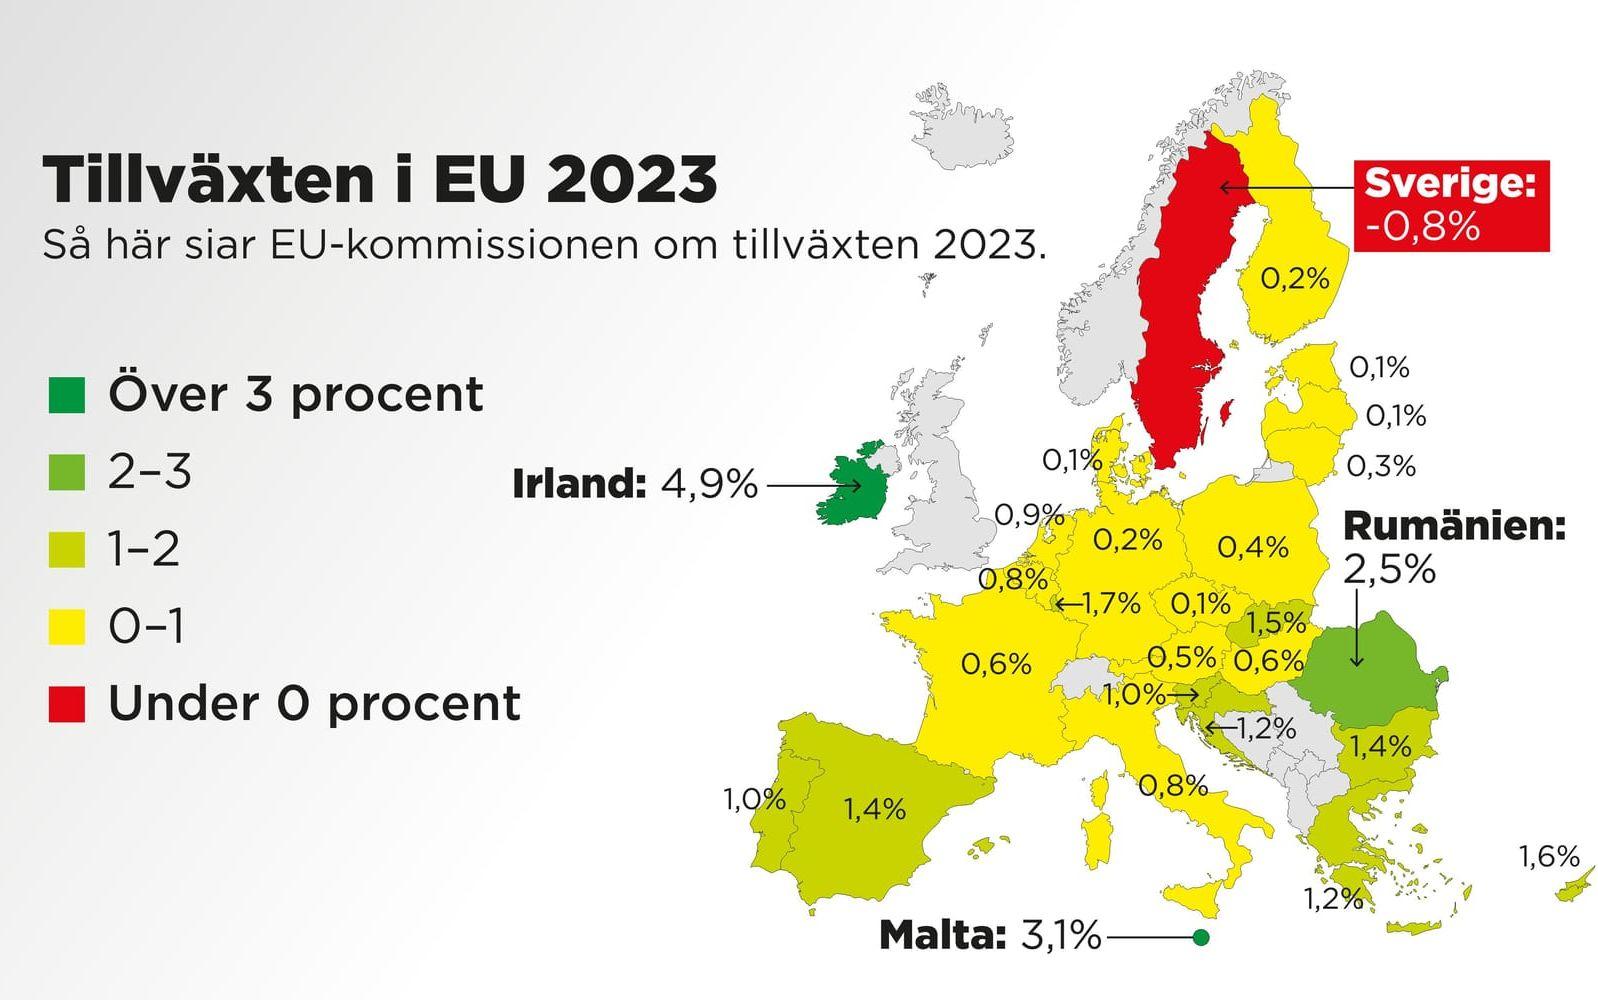 Så här siar EU-kommissionen om tillväxten 2023.